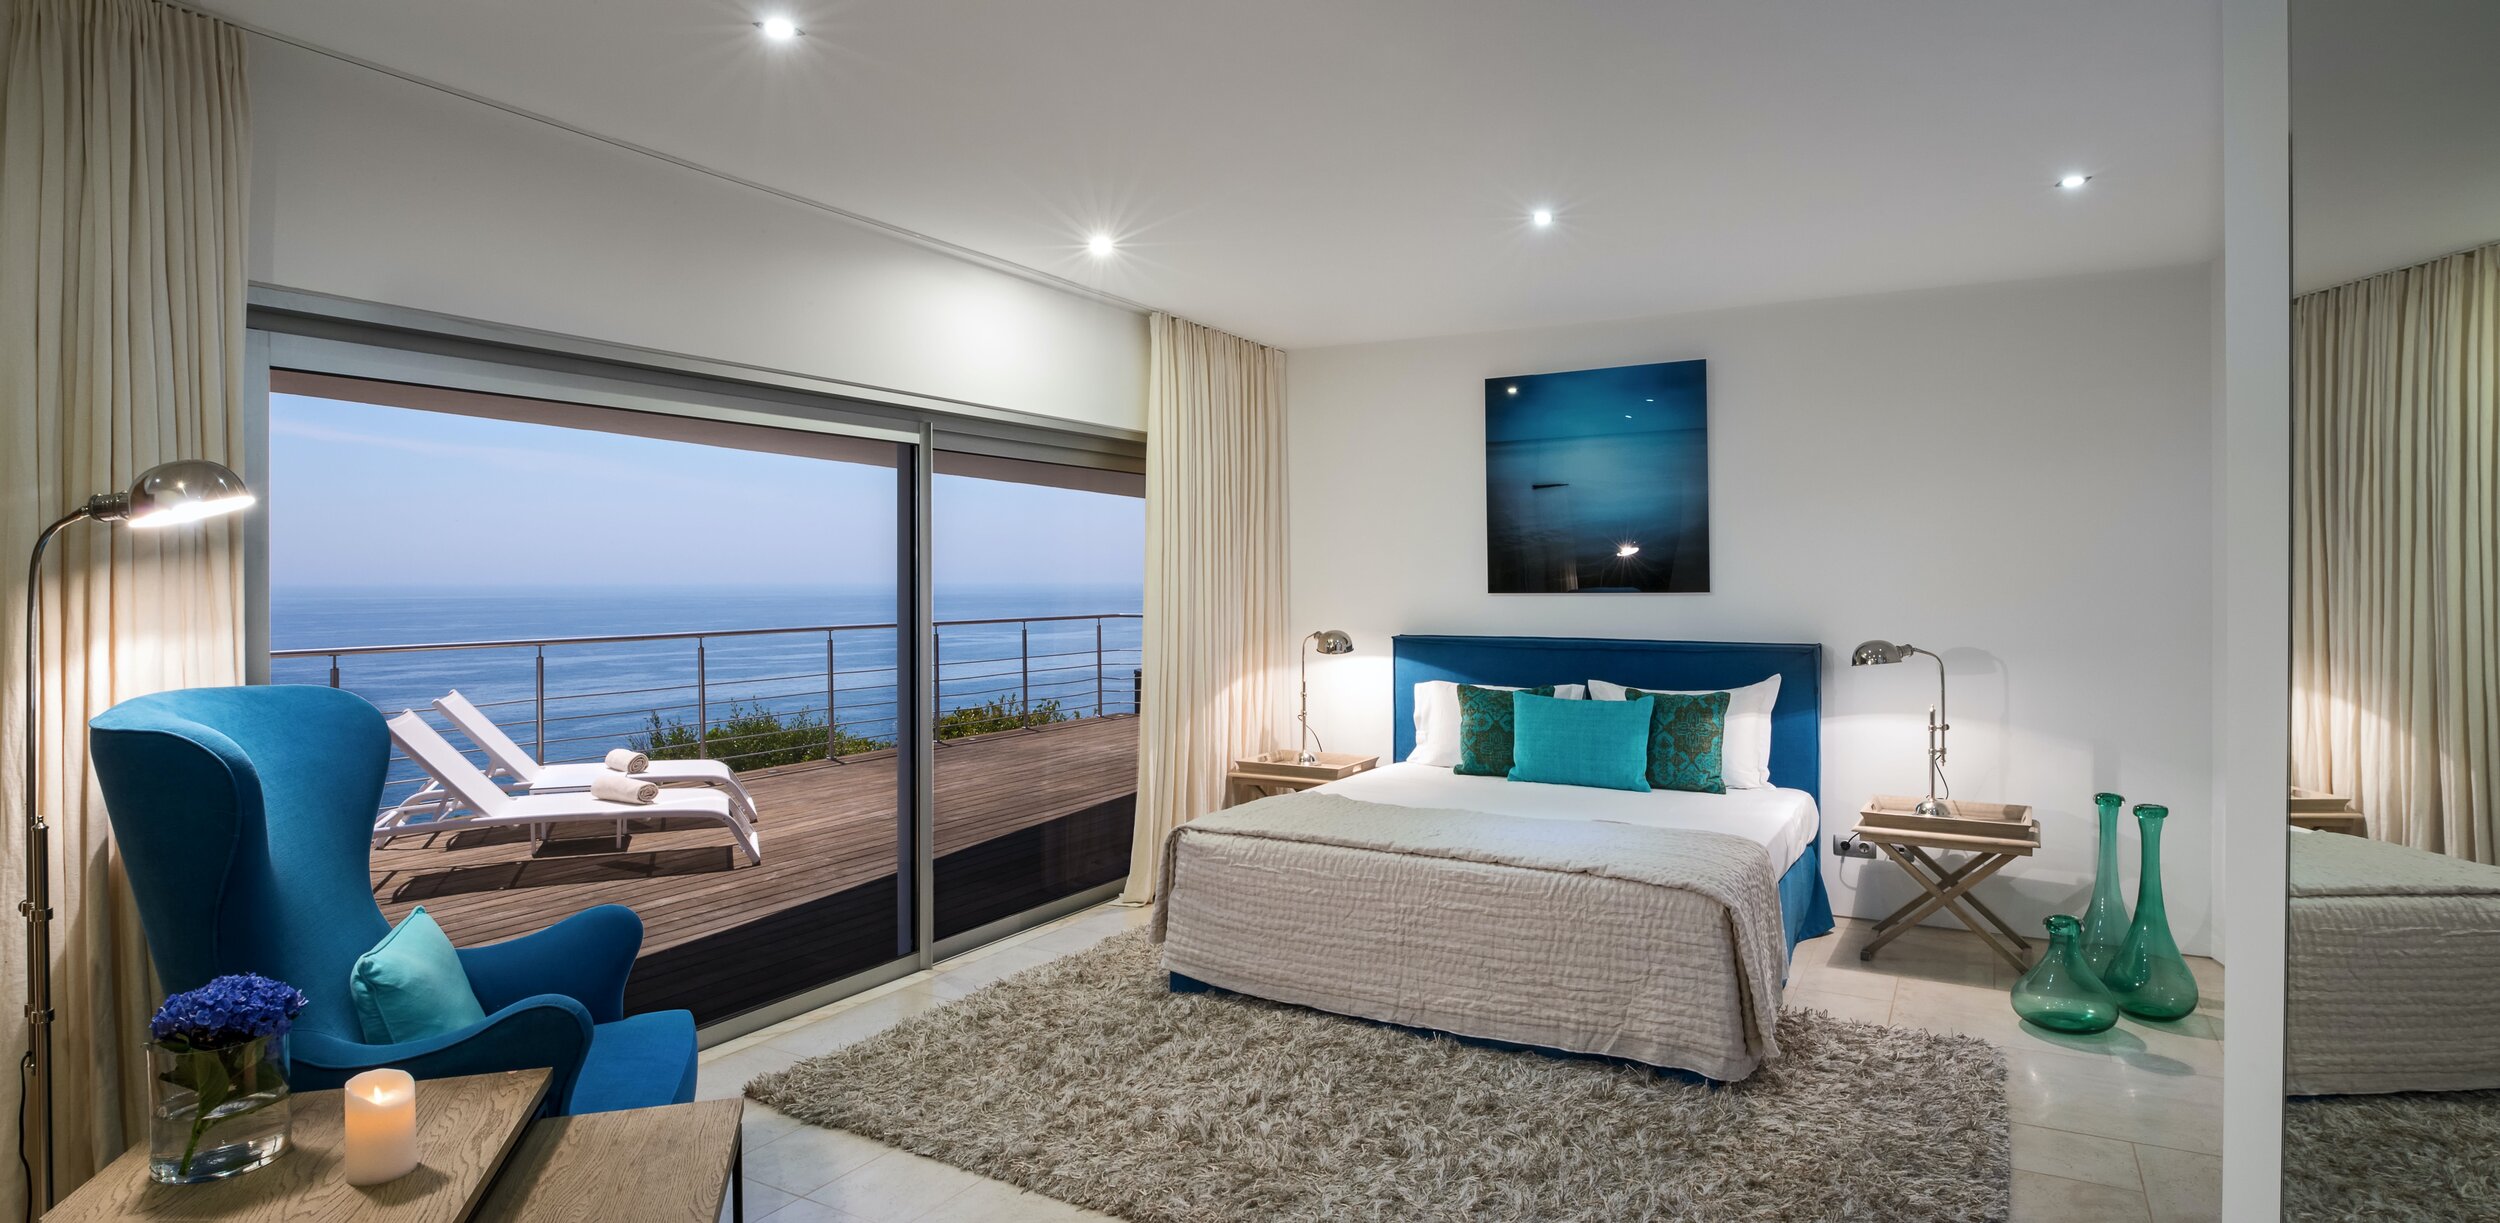 Villa Mar Azul - Master Bedroom.jpg